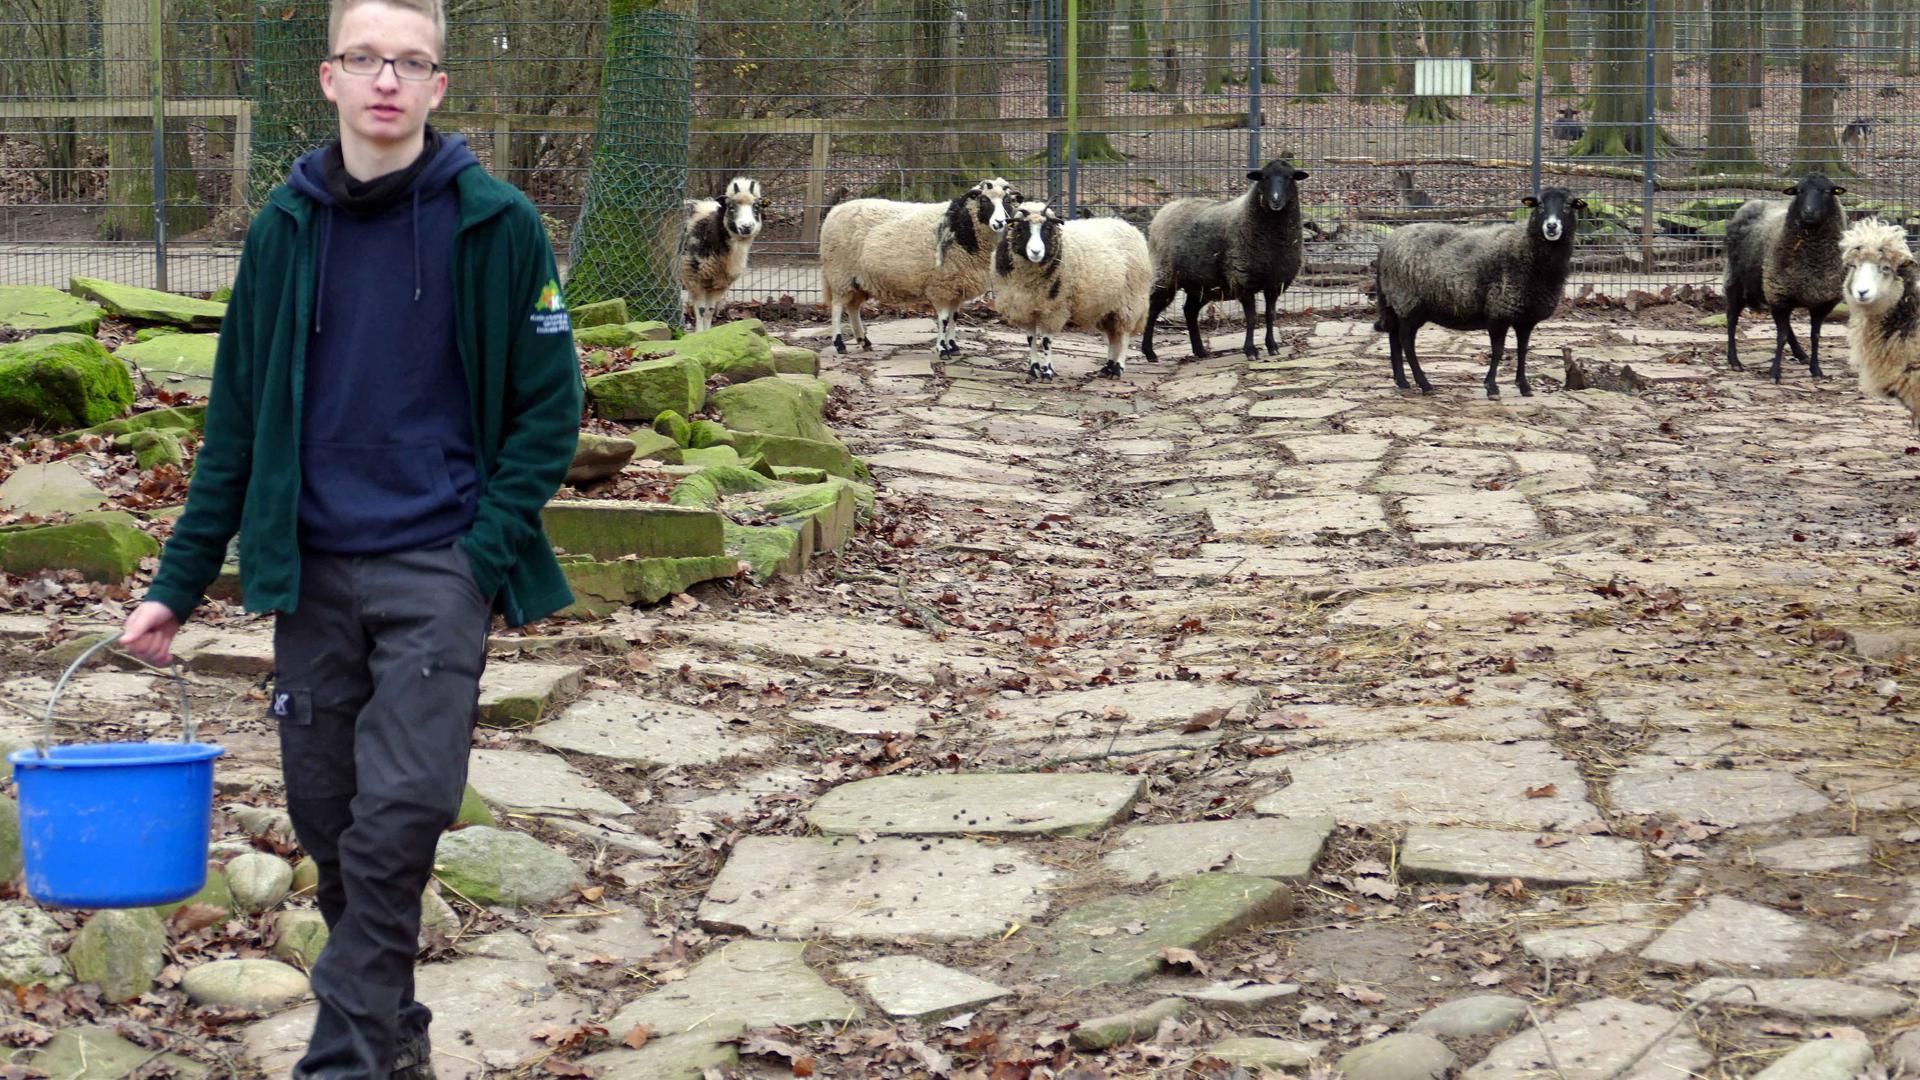 MIT VOLLEM FUTTEREIMER zieht Jan Prem von dannen, die Schafe haben heute keinen Hunger, sondern nur missmutige Blicke für den Junior-Ranger übrig. Foto: Roth